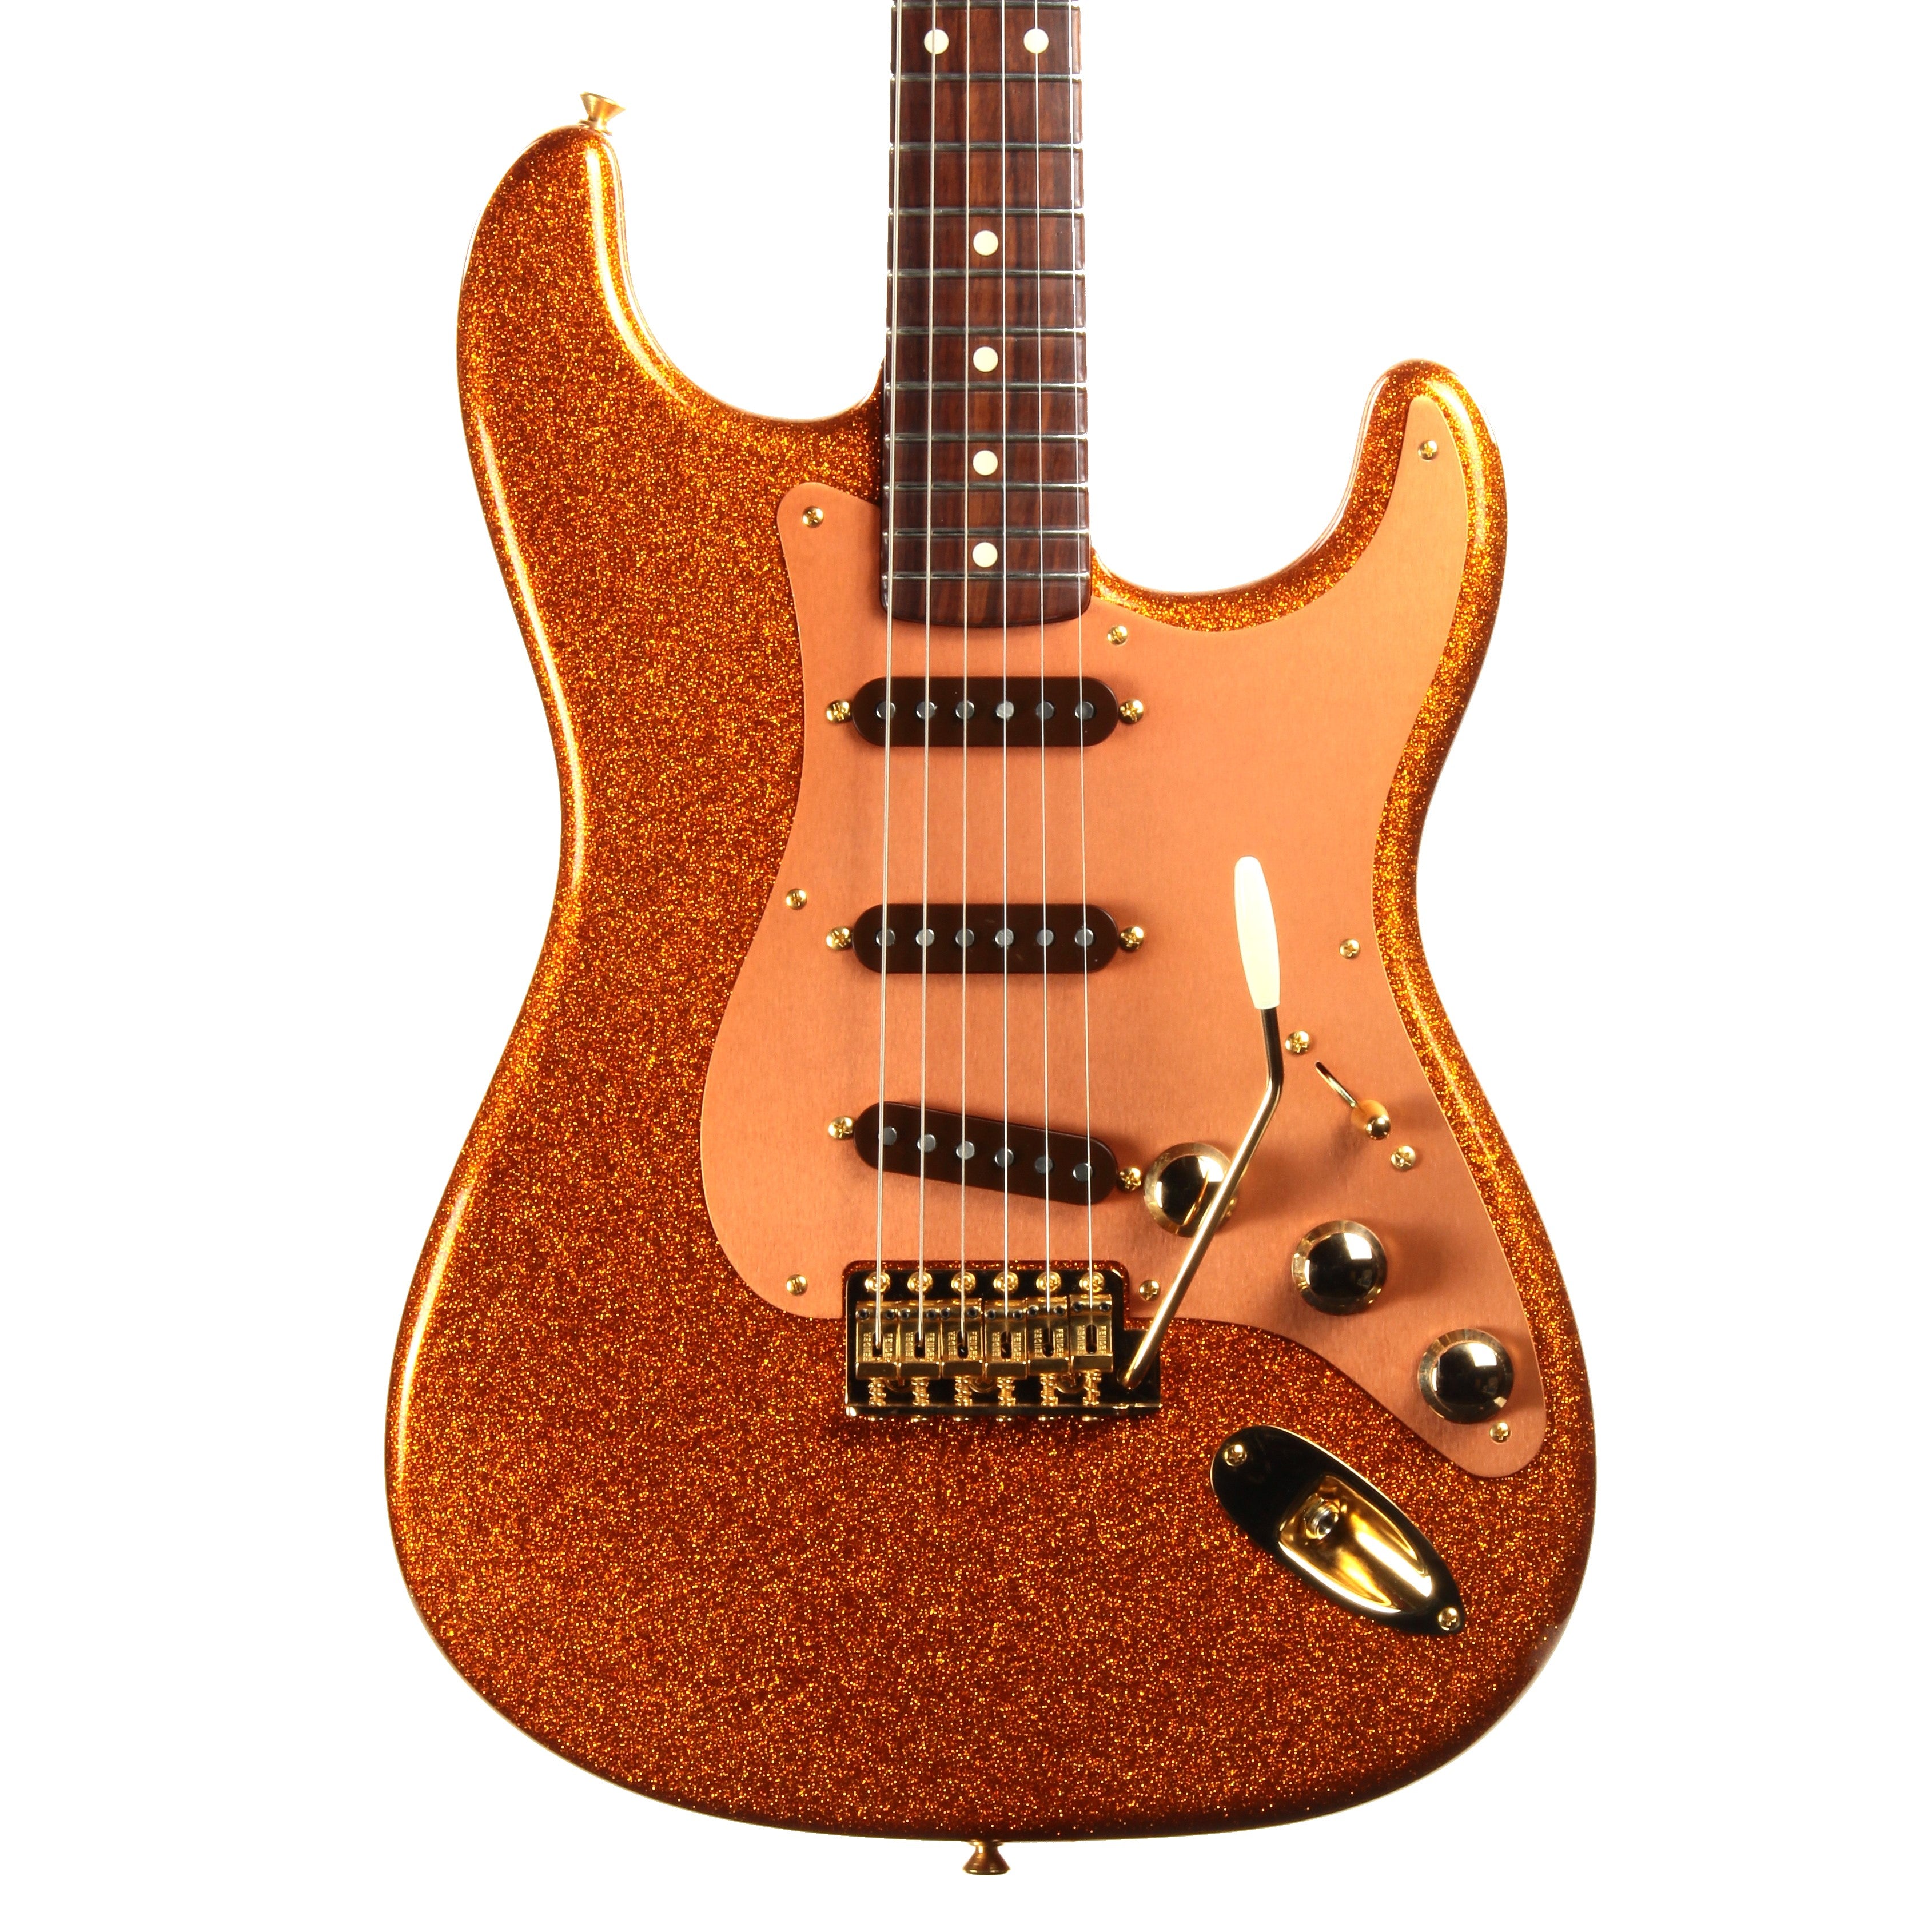 Fender Custom Shop Paul Waller Masterbuilt '56 Stratocaster Orange Sparkle - Solid CITES Rosewood Neck!